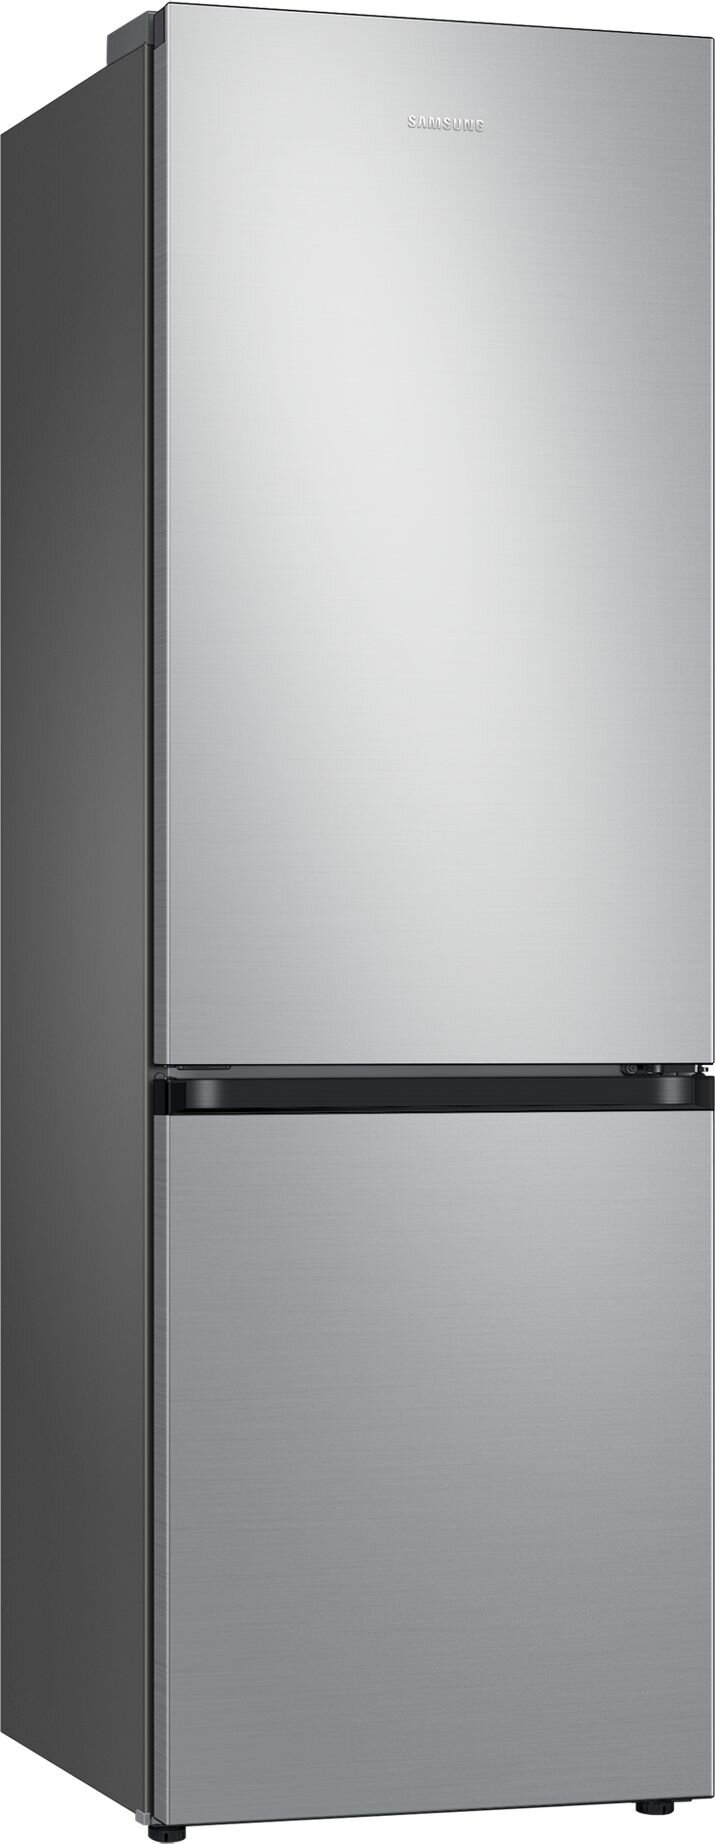 Холодильник Samsung - фото №2